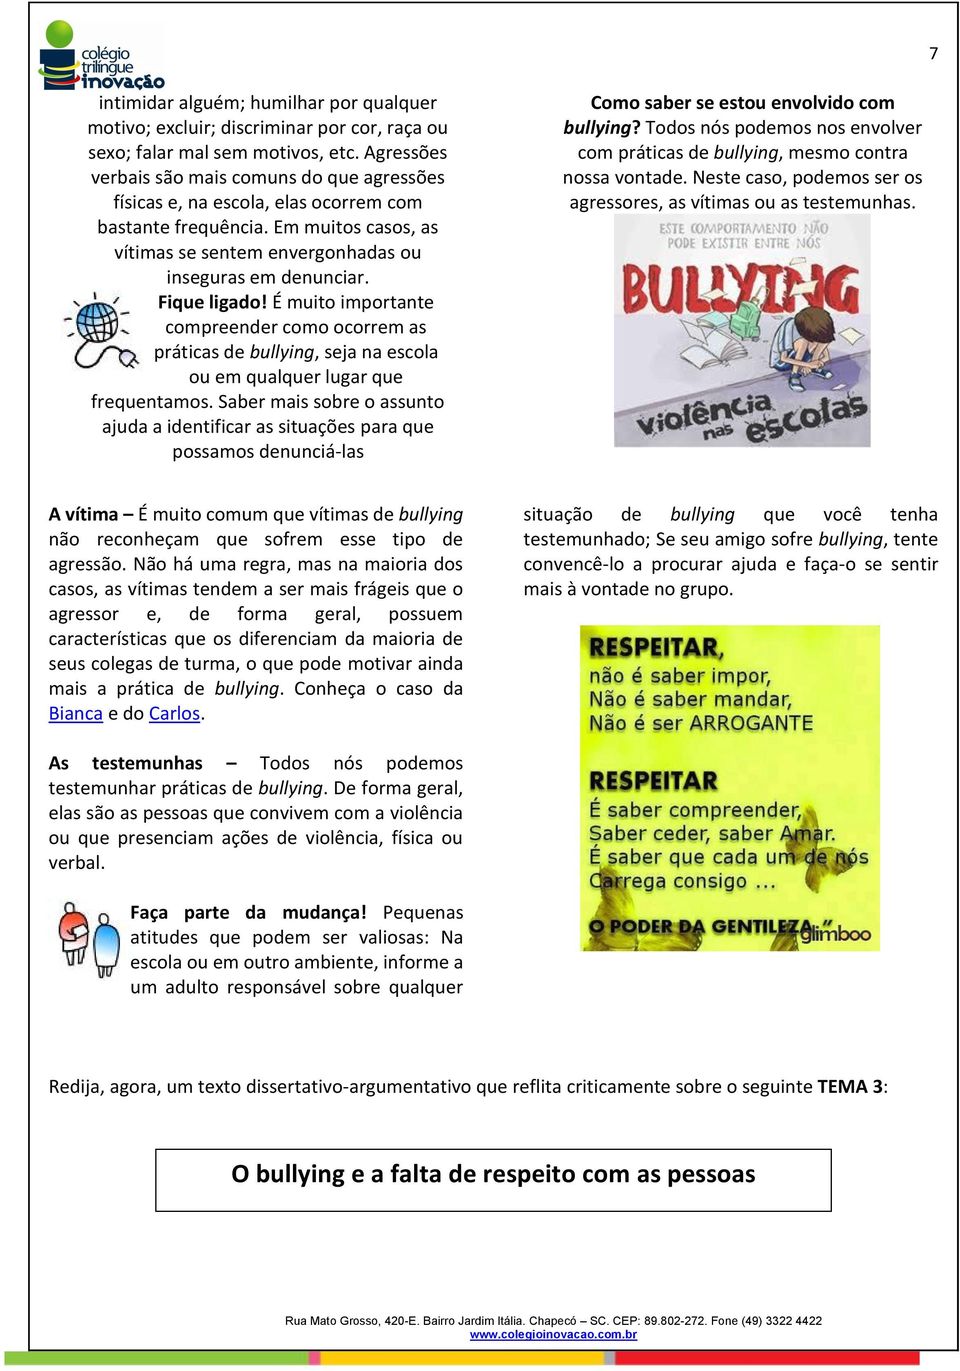 Fique ligado! É muito importante compreender como ocorrem as práticas de bullying, seja na escola ou em qualquer lugar que frequentamos.